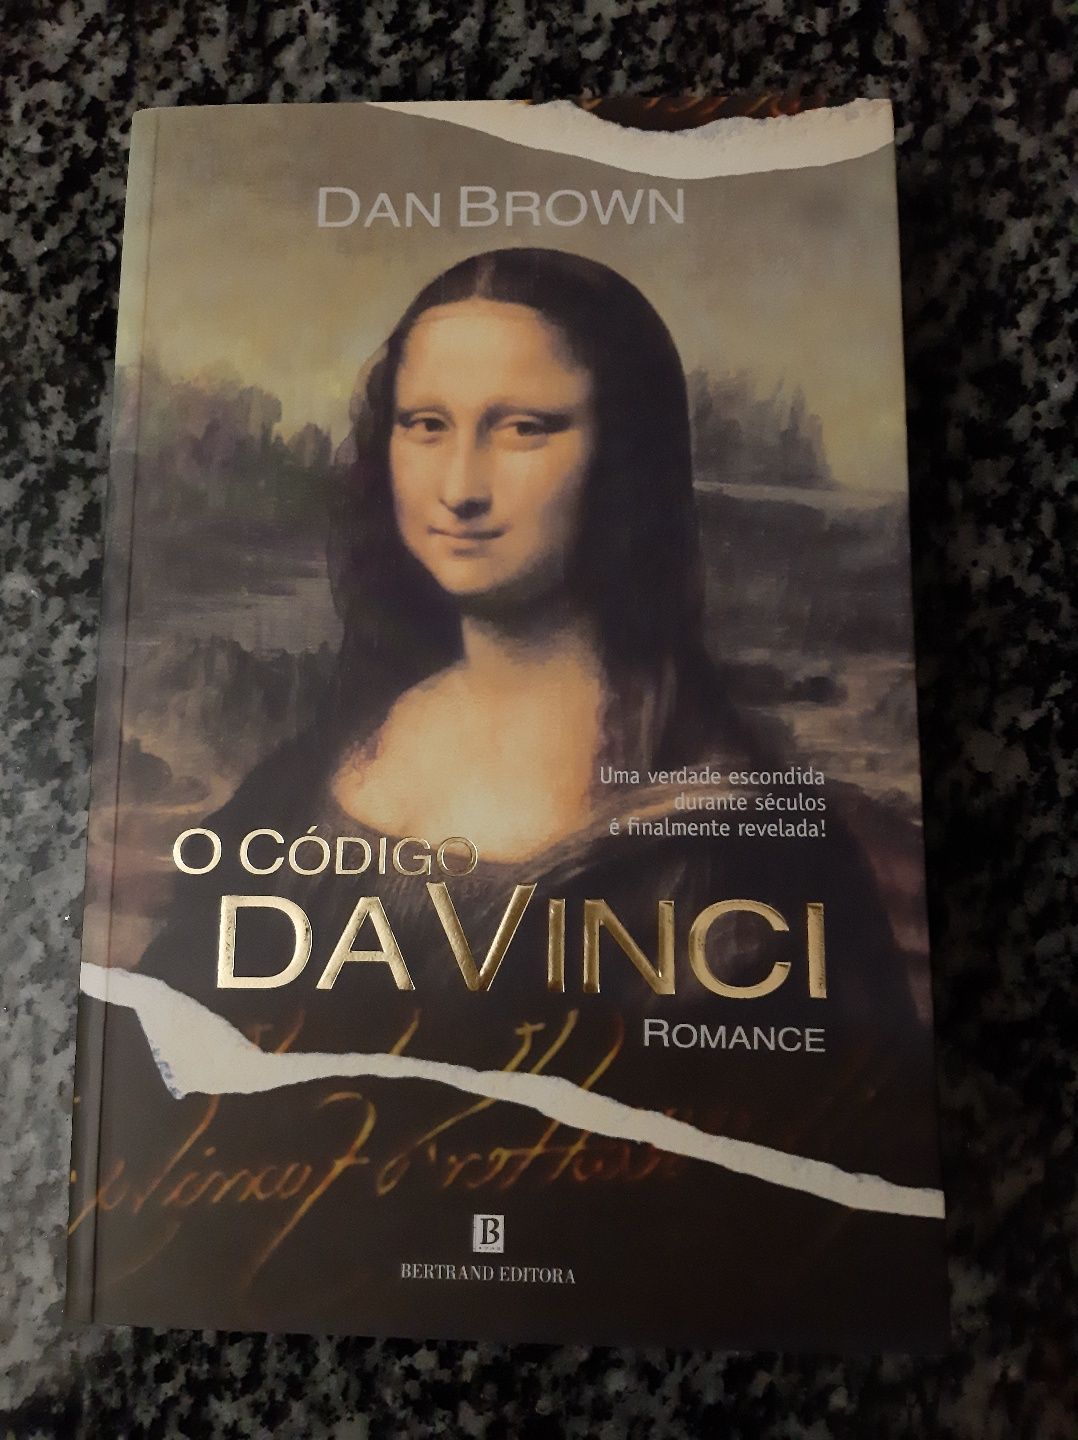 Livro " Código da Vinci " Dan Brown